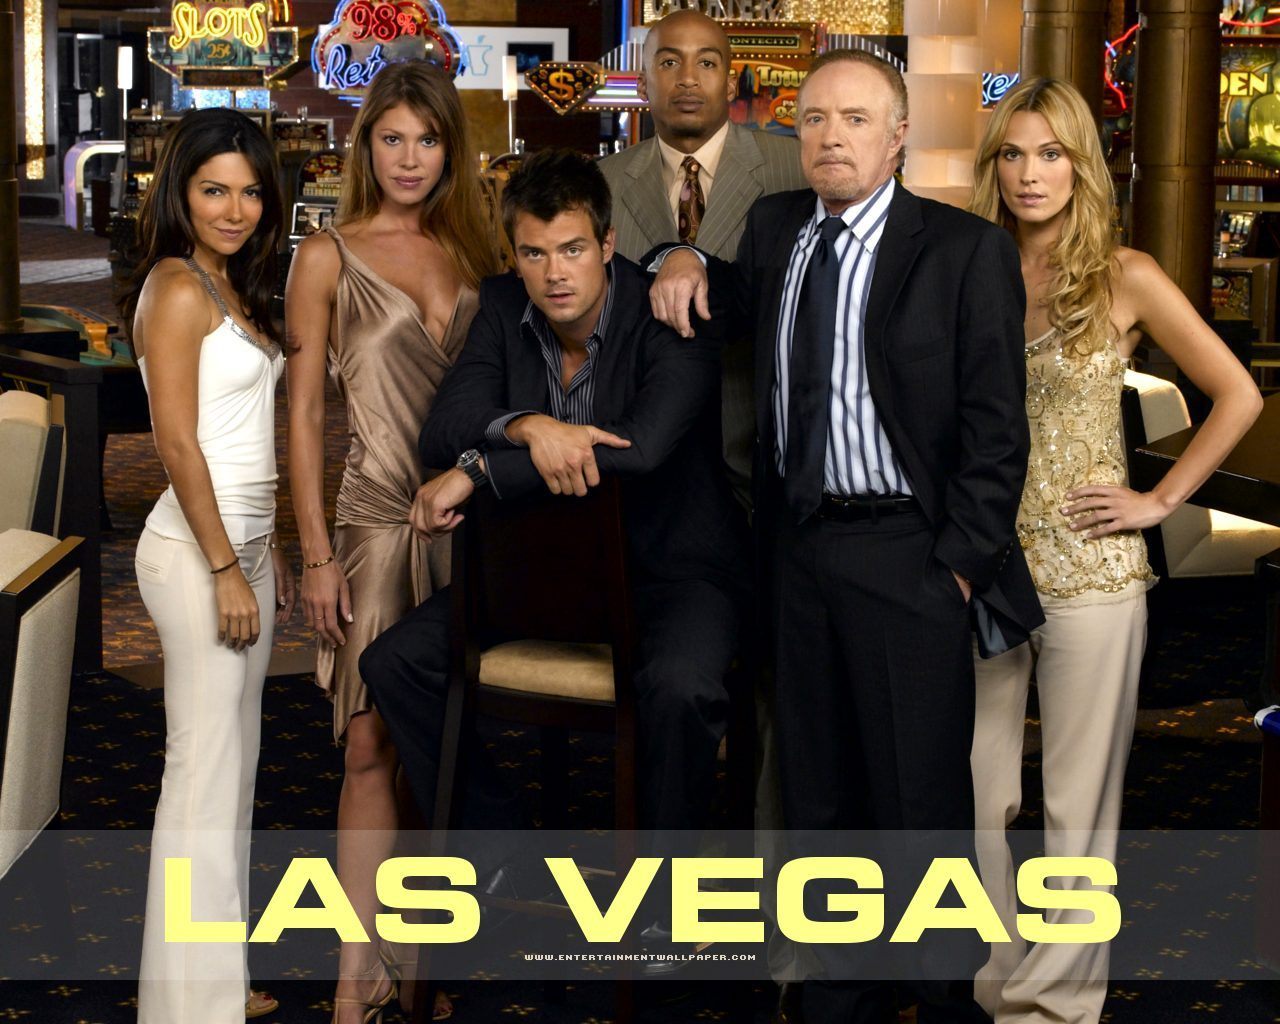 Las-Vegas-las-vegas-the-series-3036688-1280-1024.jpg